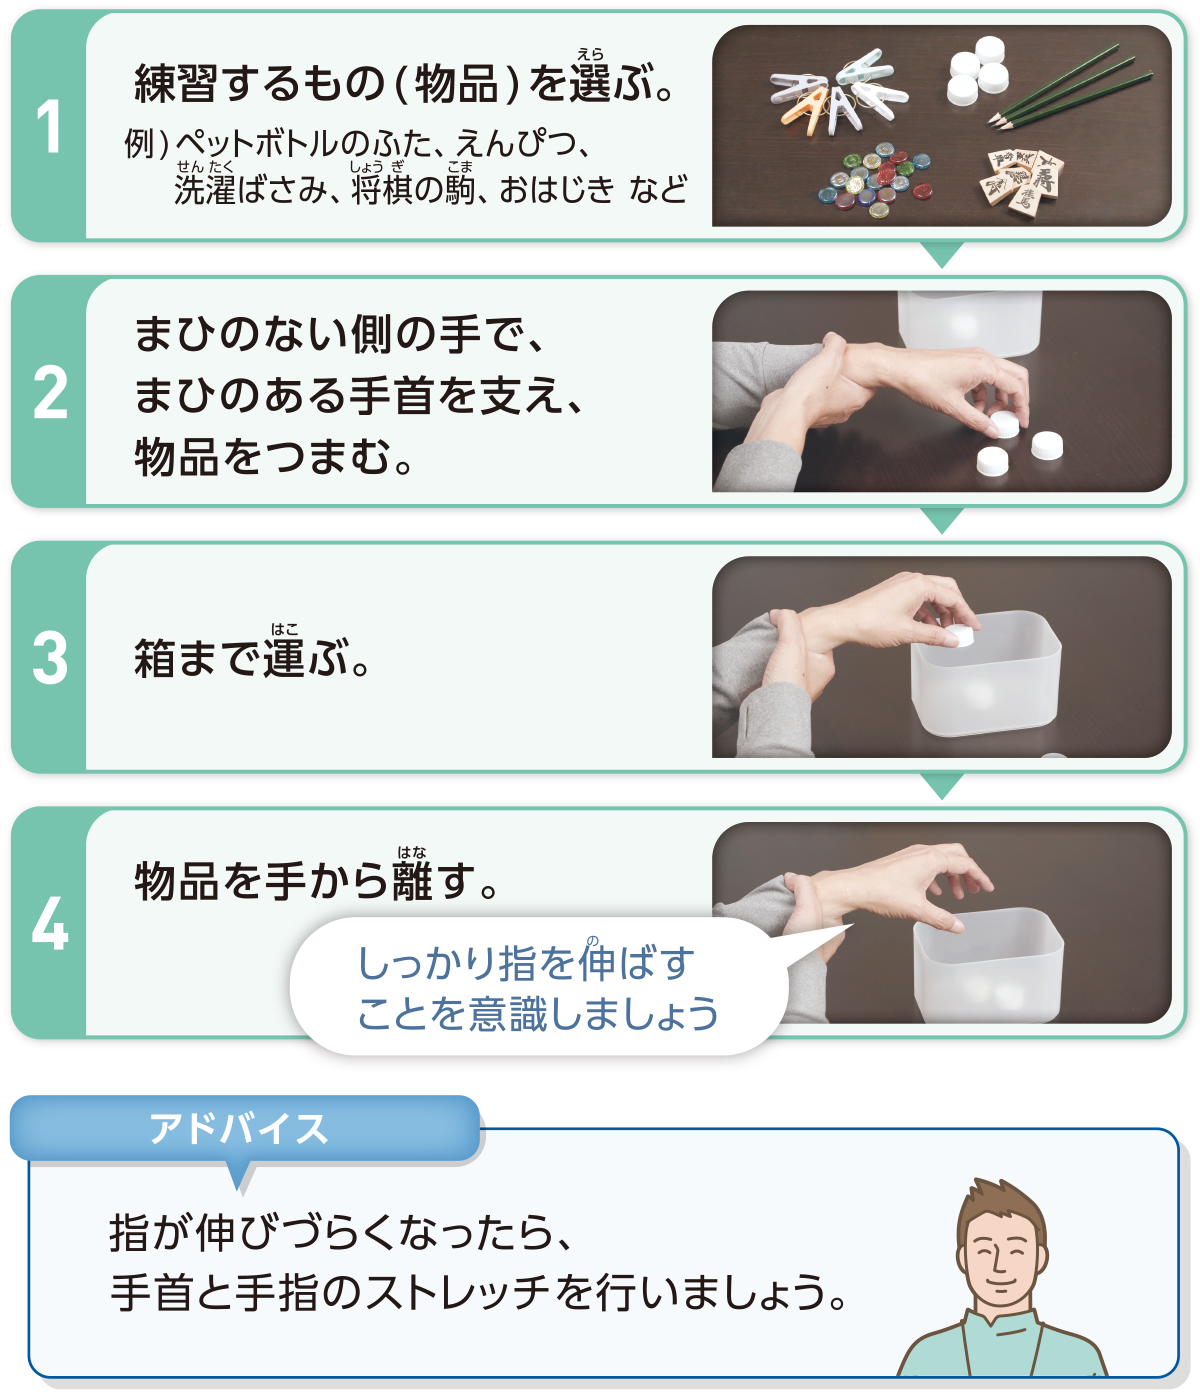 1：練習するもの(物品)を選ぶ。 例)ペットボトルのふた、えんぴつ、洗濯ばさみ、将棋の駒、おはじき  など　2：まひのない側の手で、まひのある手首を支え、物品をつまむ。　3：箱まで運ぶ。　4：物品を手から離す。 しっかり指を伸ばすことを意識しましょう　アドバイス：指が伸びづらくなったら、手首と手指のストレッチを行いましょう。